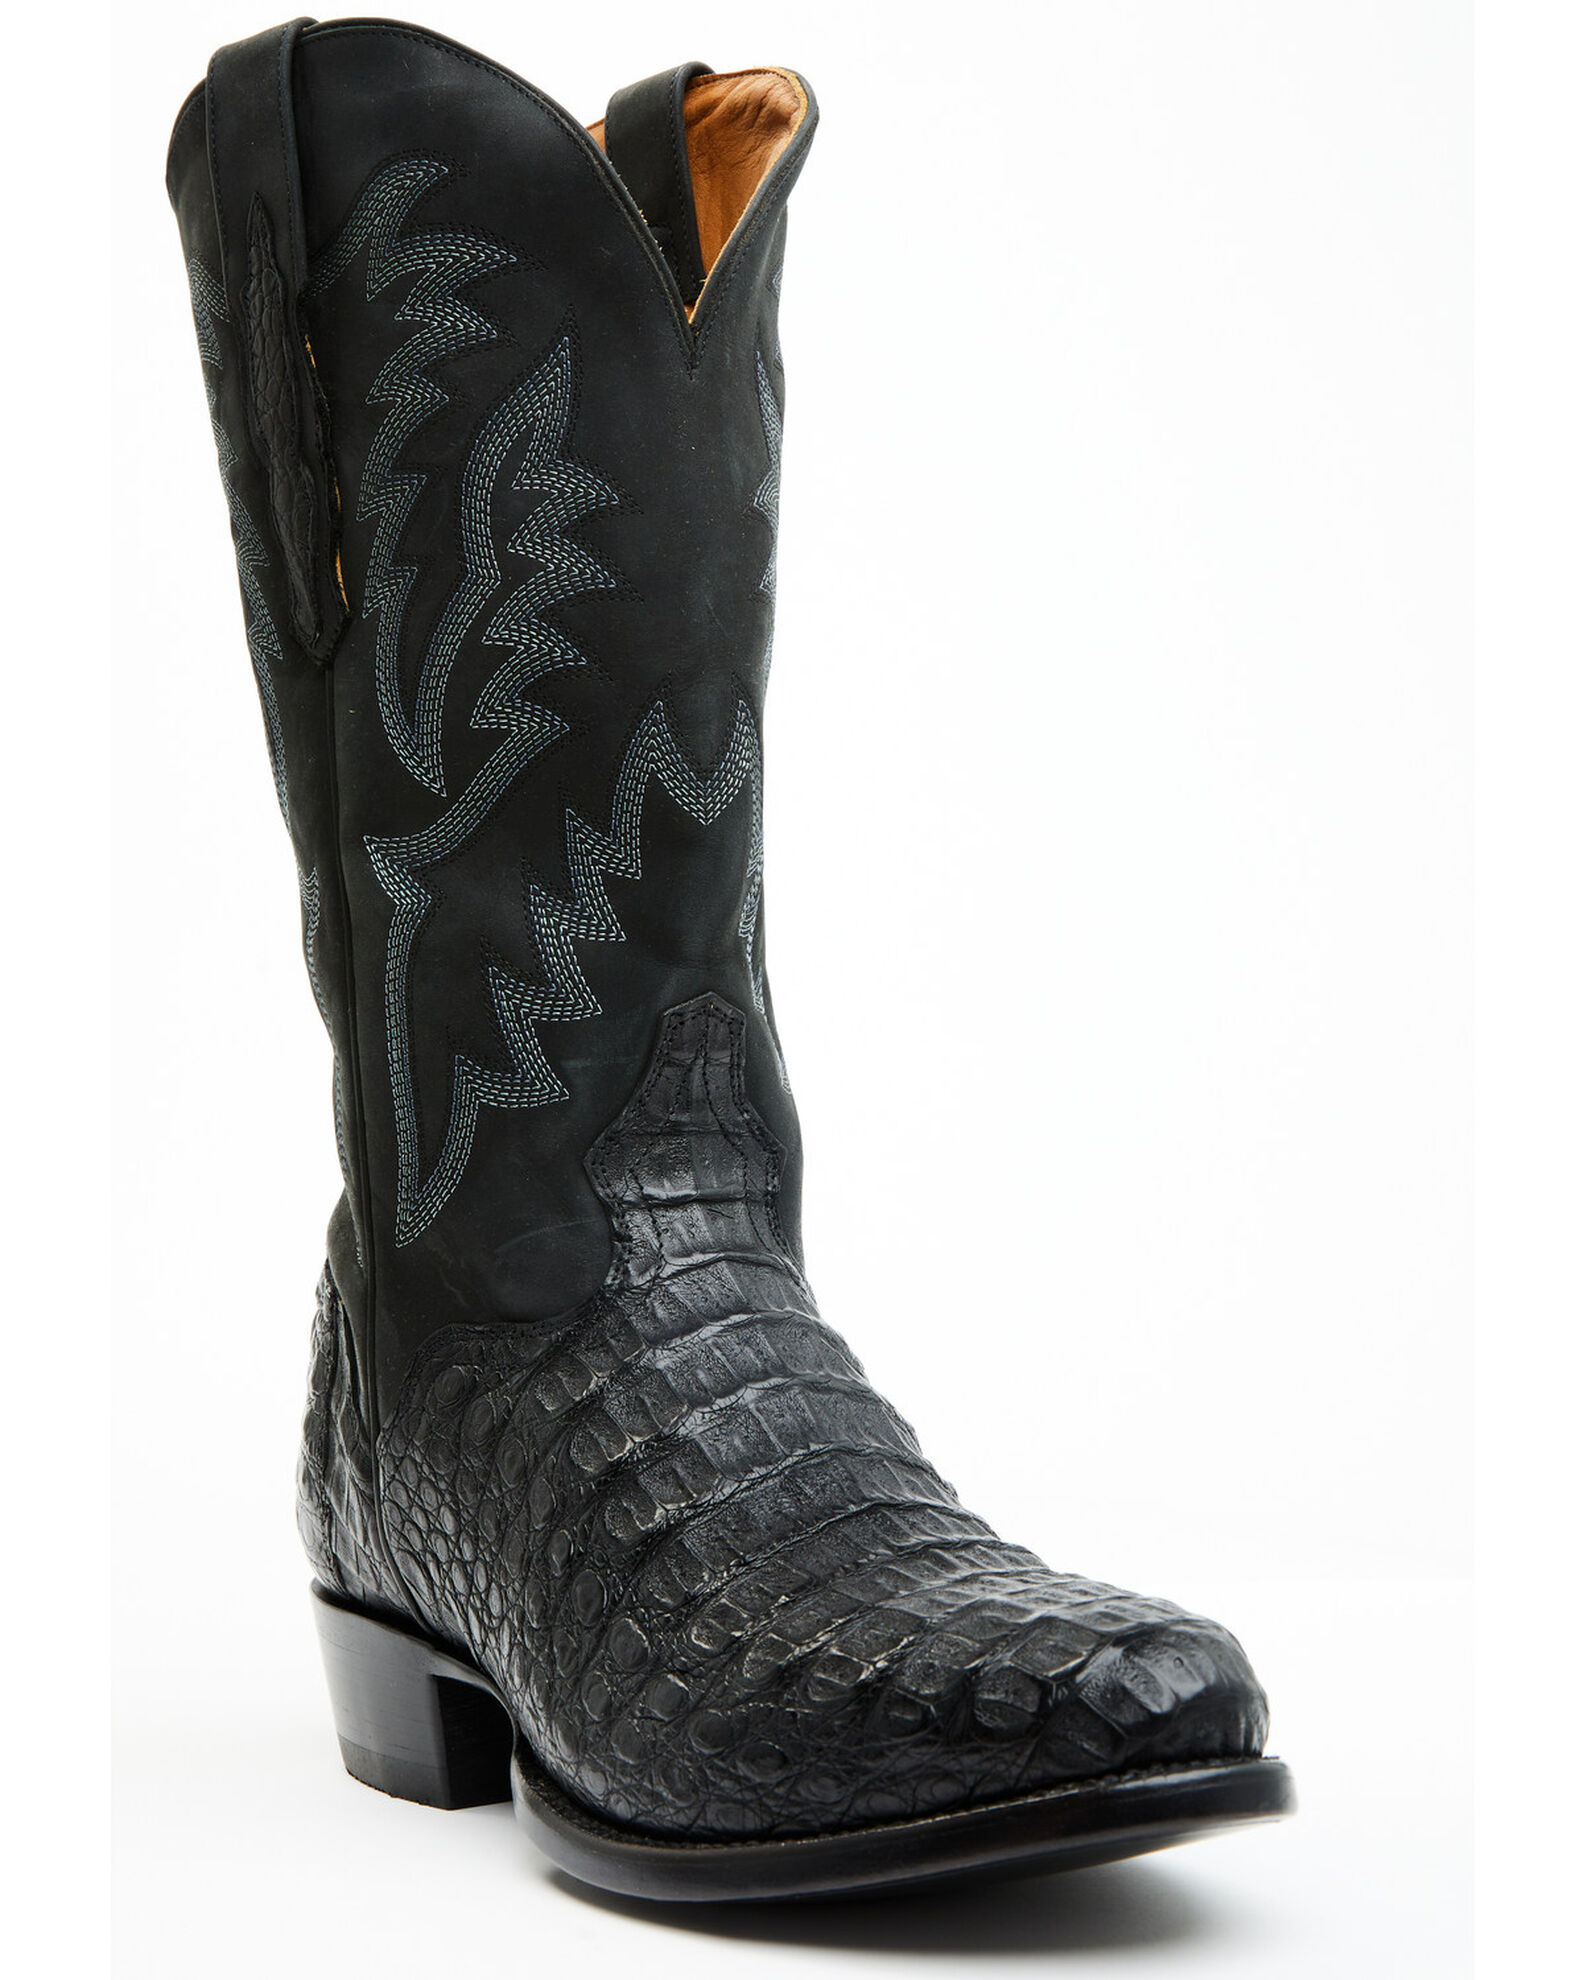 El Dorado Men's Exotic Caiman Western Boots